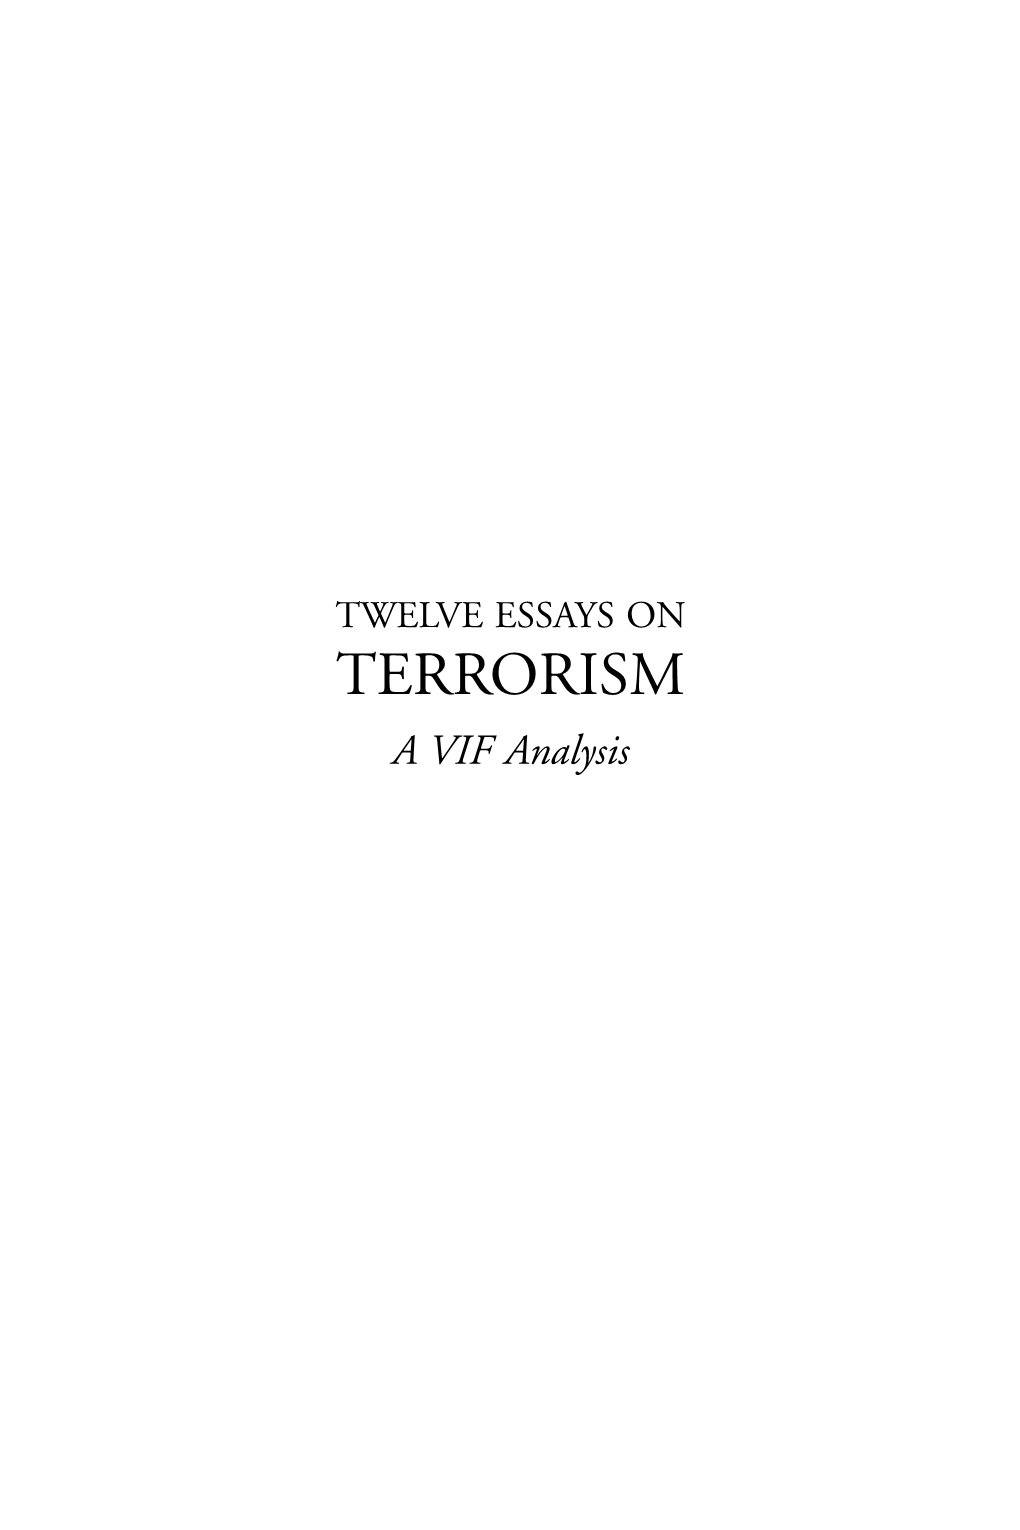 TERRORISM a VIF Analysis